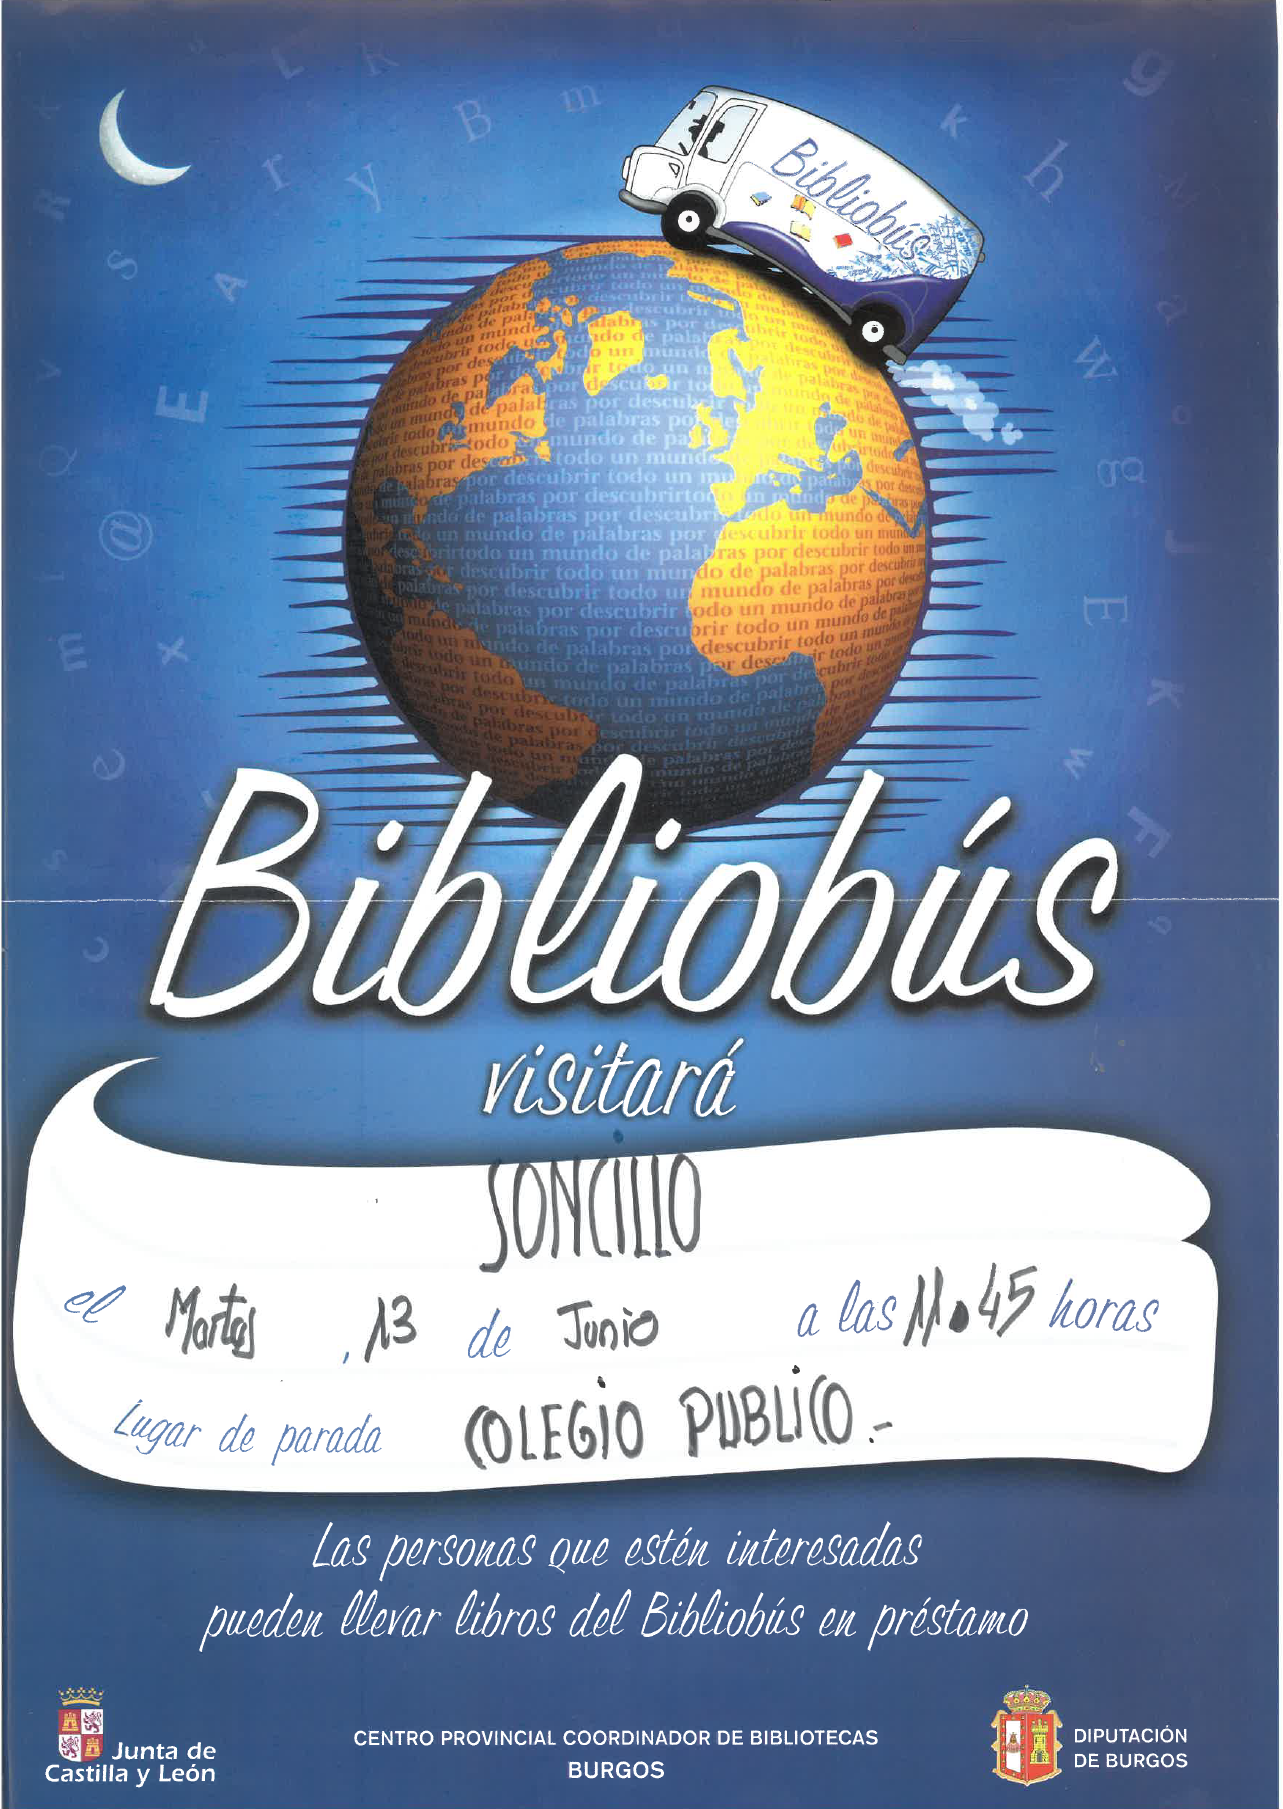 "BIBLIOBUS 13 DE JUNIO"